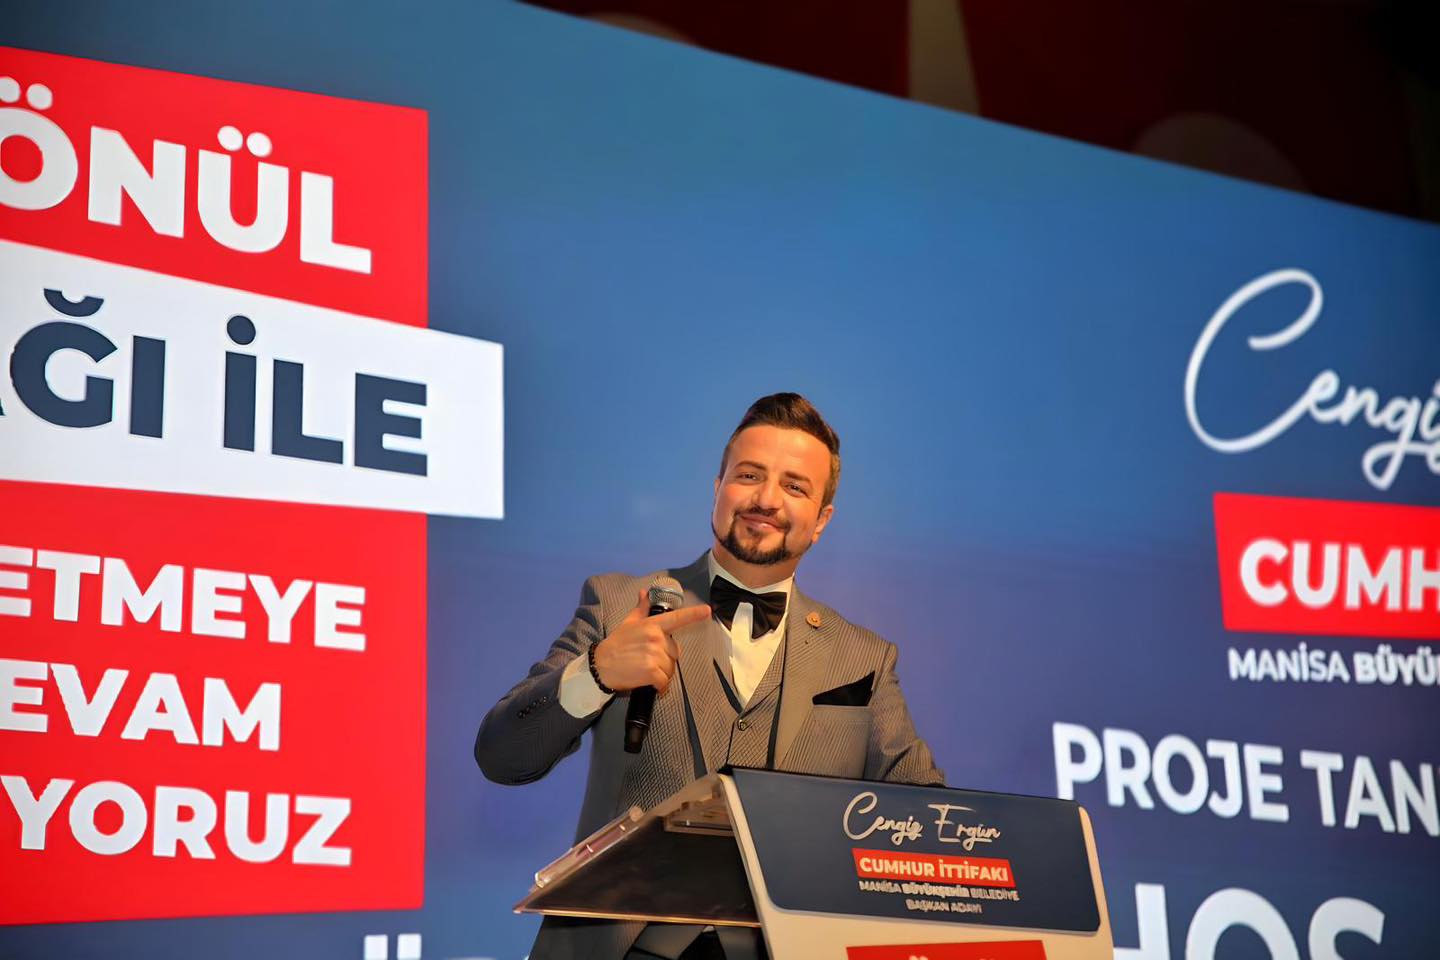 Manisa Büyükşehir Belediye Başkanı Cengiz Ergün’ün 2024-2029 proje tanıtım toplantı sunumu Sunucu Volkan Erel